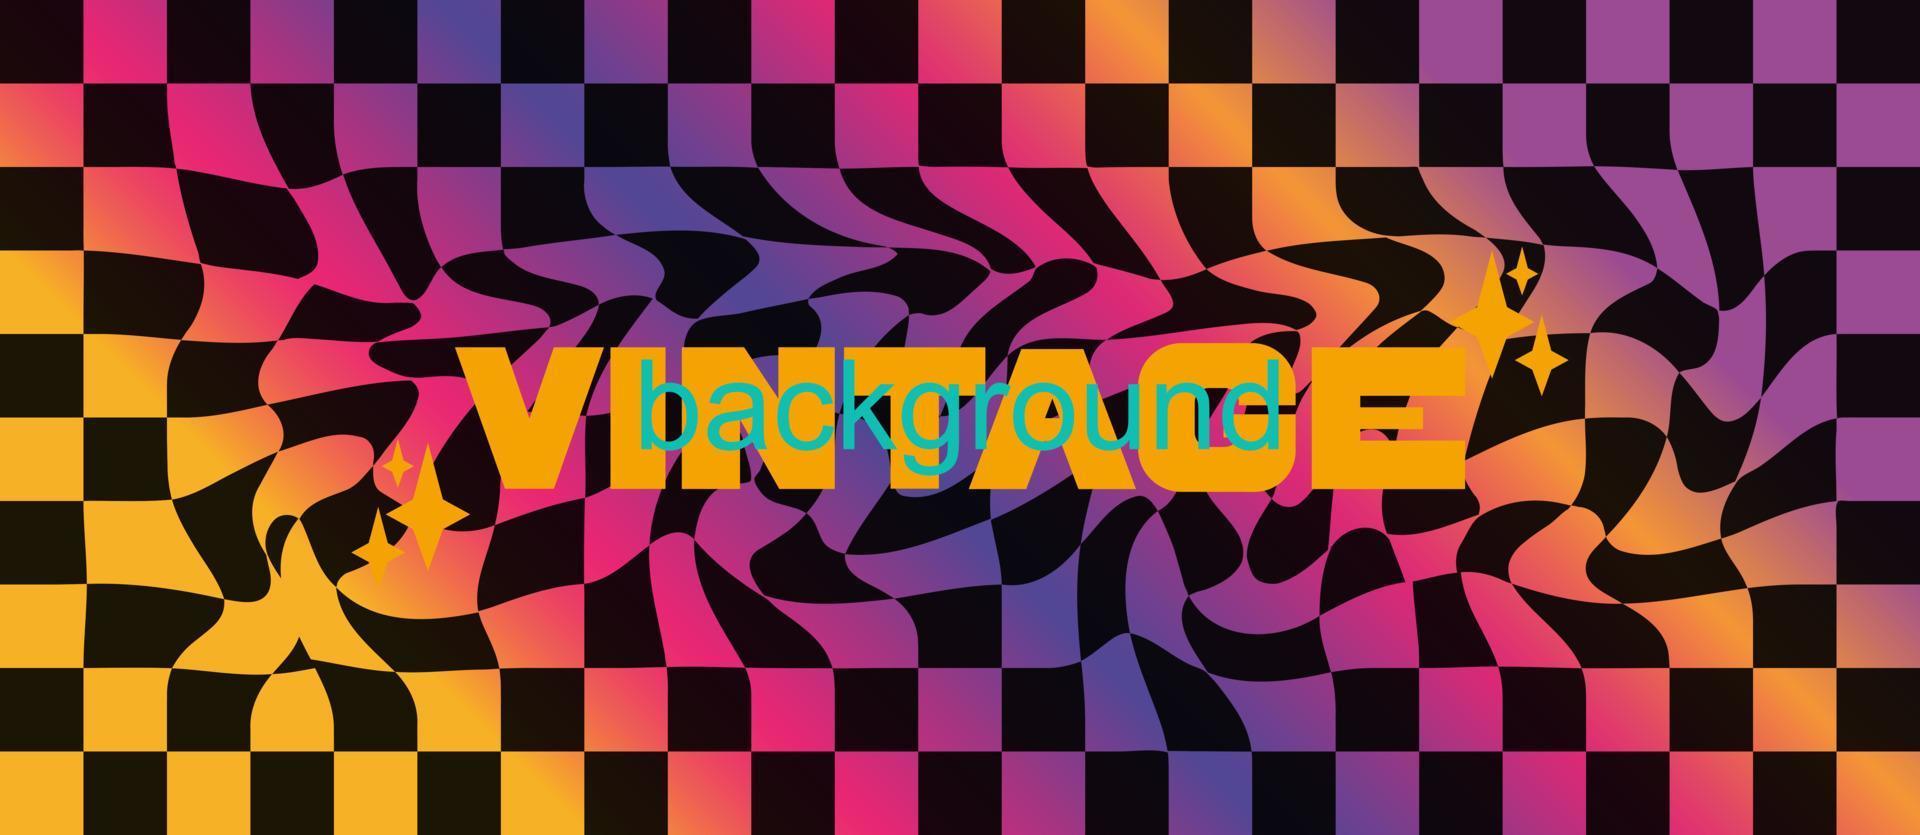 kleurrijke vintage geruite achtergrond in retro stijl van de jaren 80-90. esthetische trendy retro banner. vectorillustratie. vector